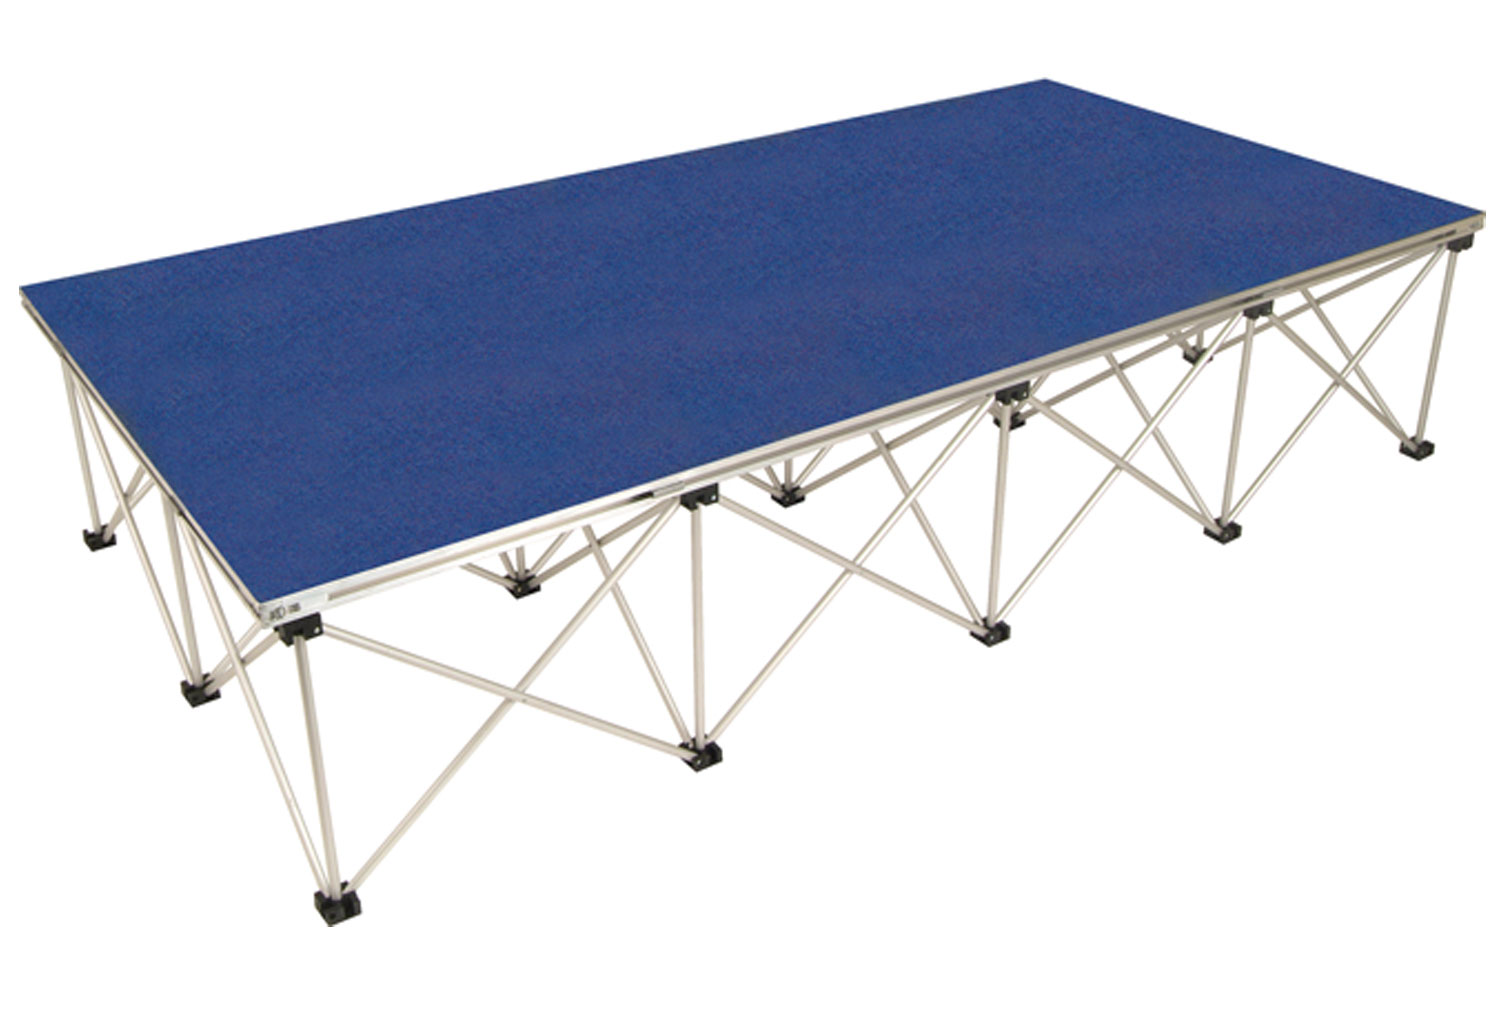 Gopak Ultralight Rectangular Stage Deck & Riser, 200wx100d (cm), Sapphire Blue Carpet